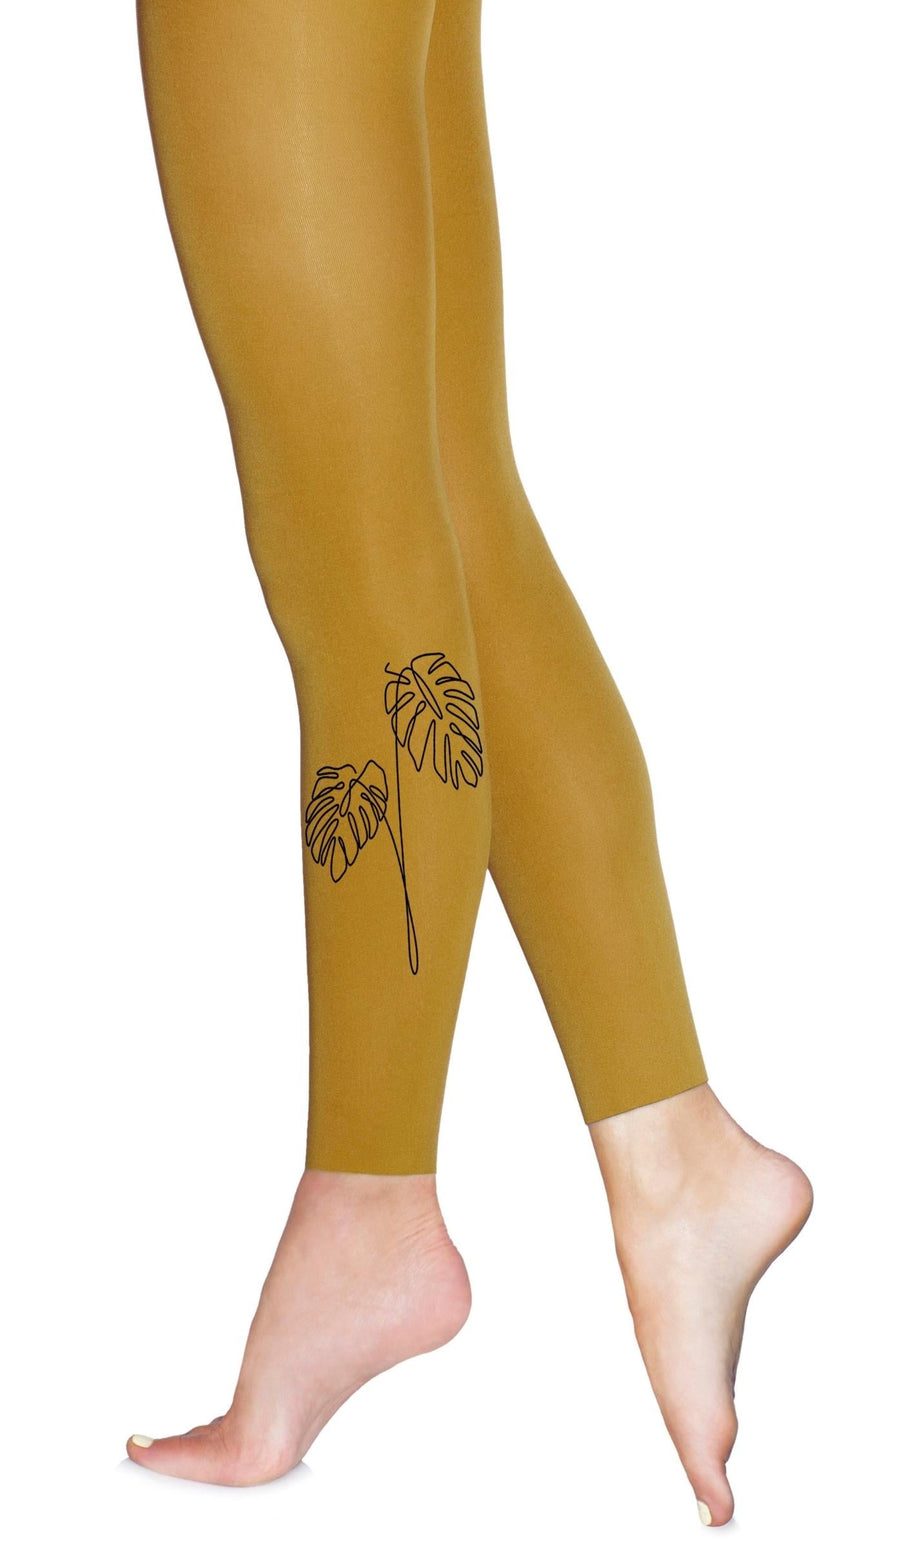 גרביון בצבע חרדל ללא כף רגל עם הדפס עלים